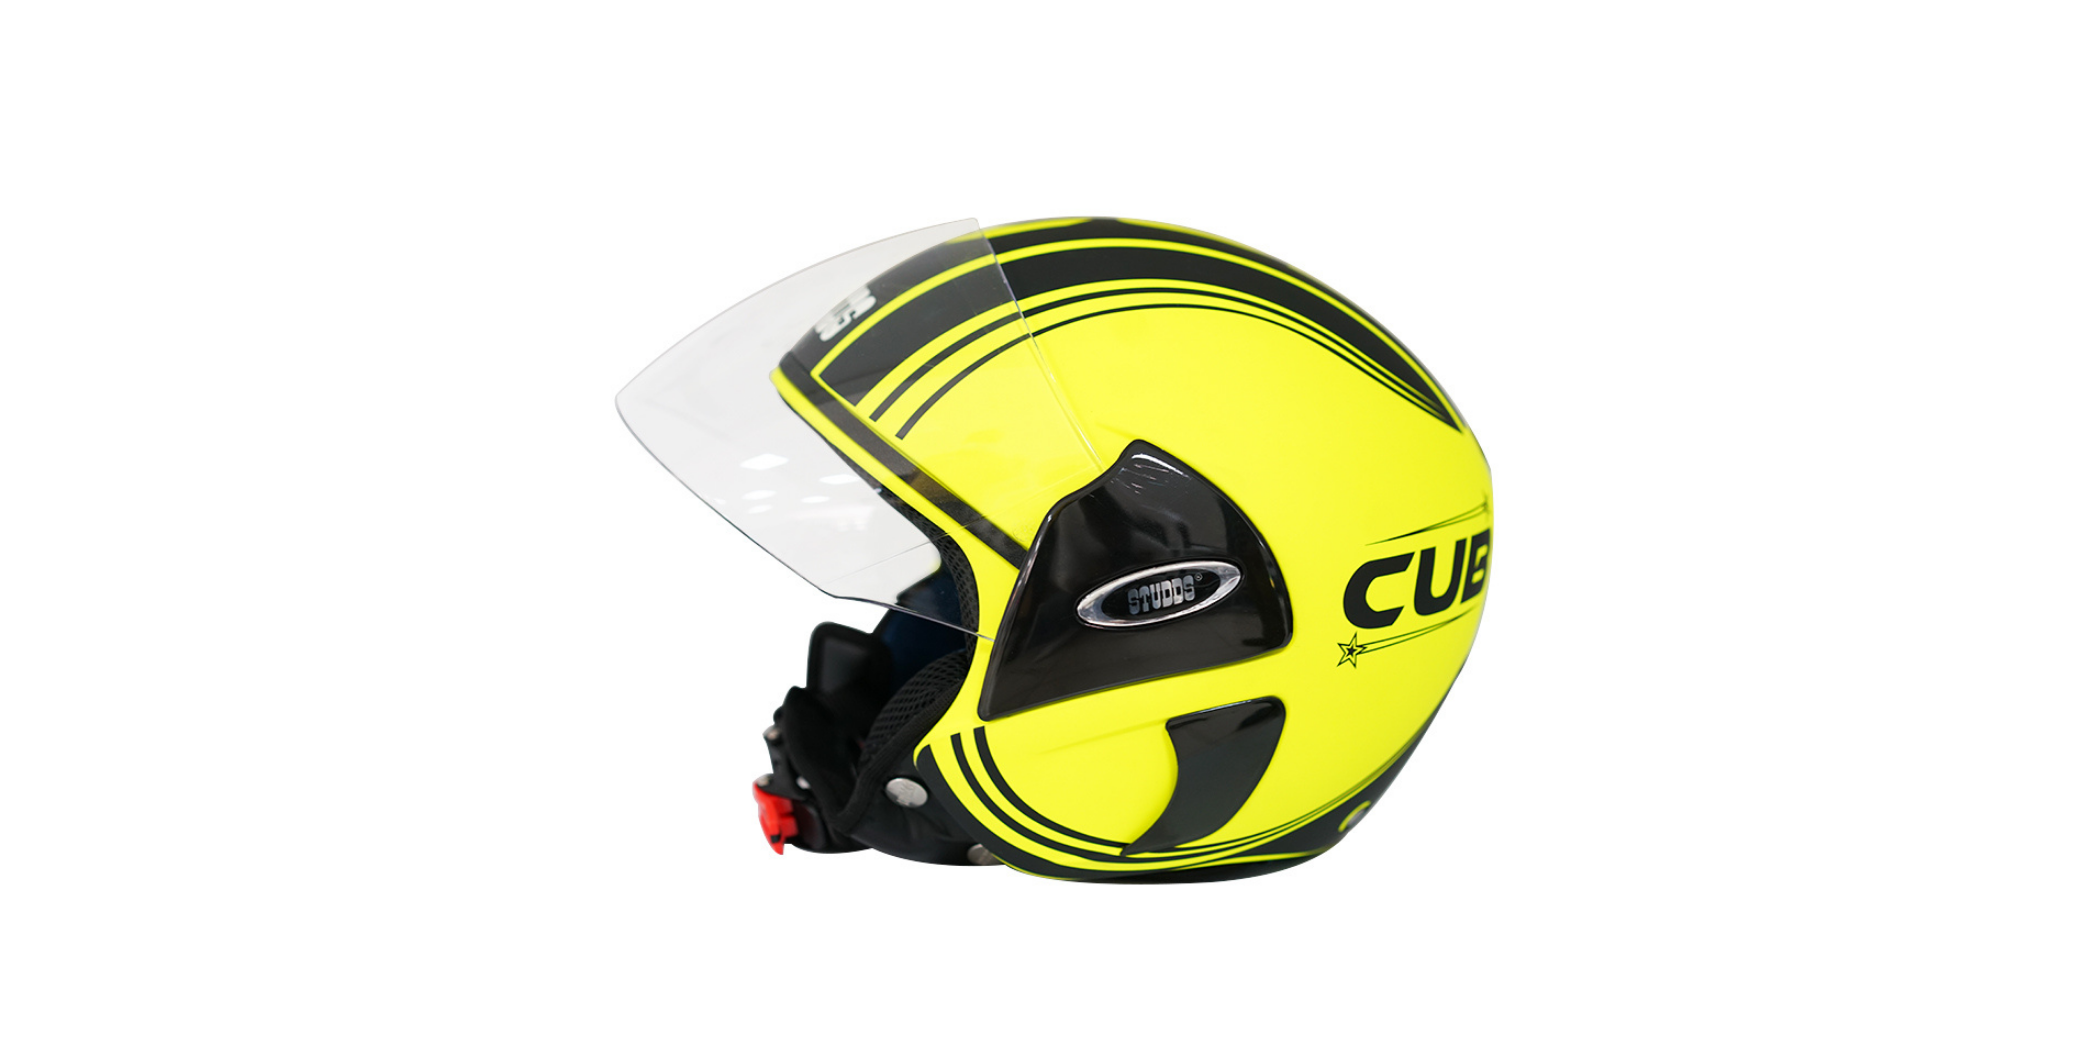 Studds Cub D4 Matt Neon Yellow N9 06983  Helmet